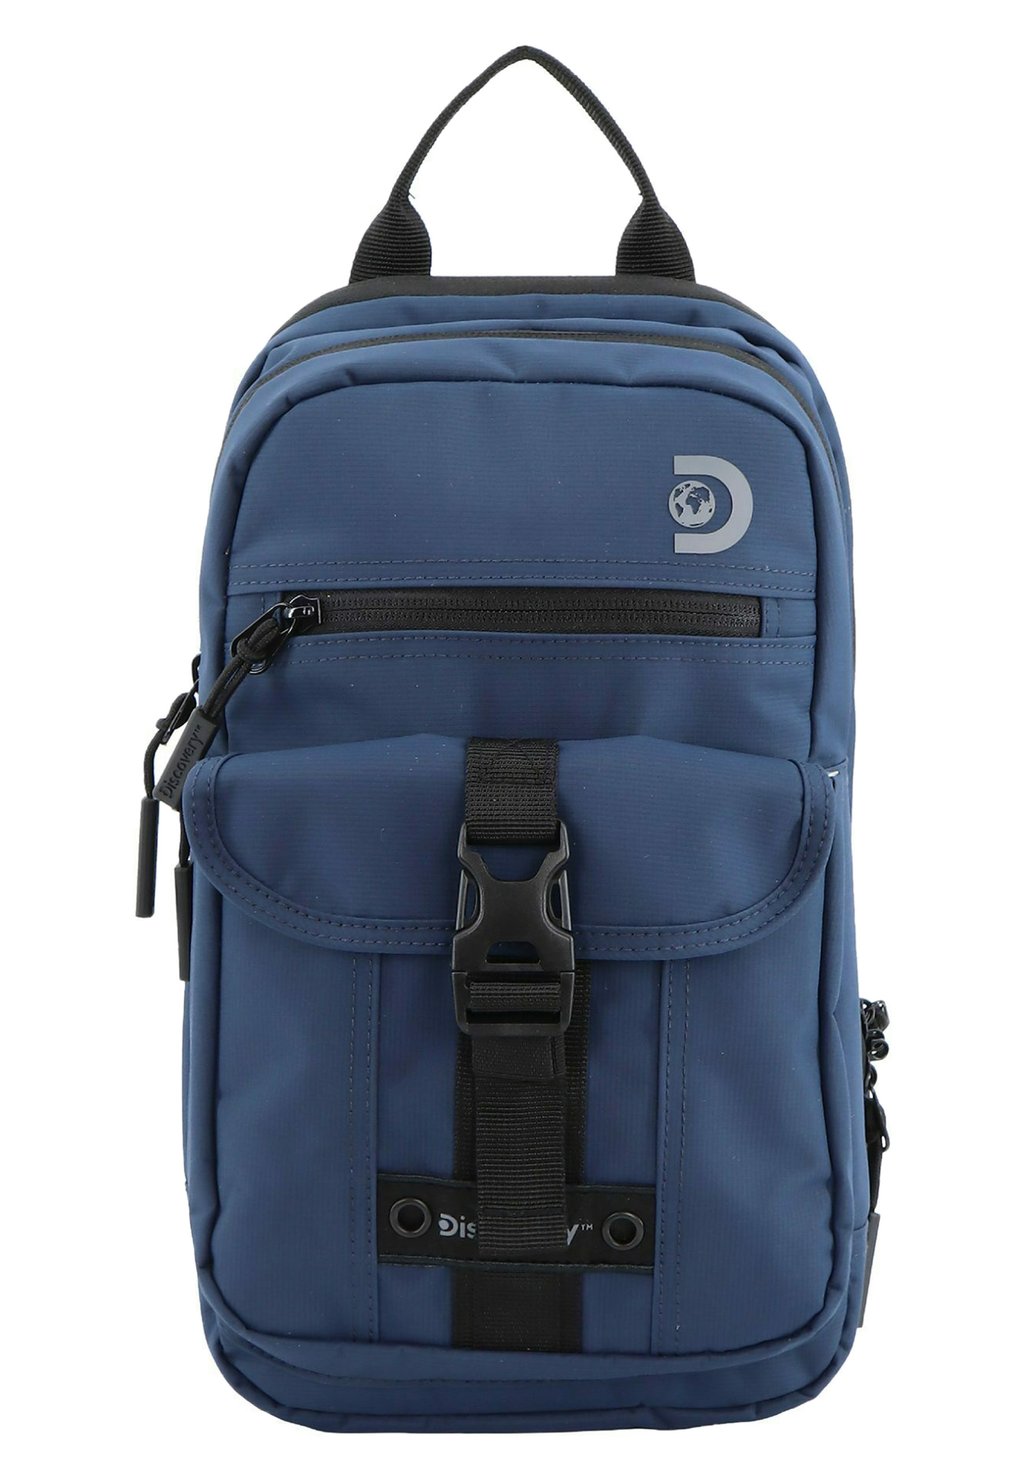 Рюкзак Discovery, синий рюкзак discovery